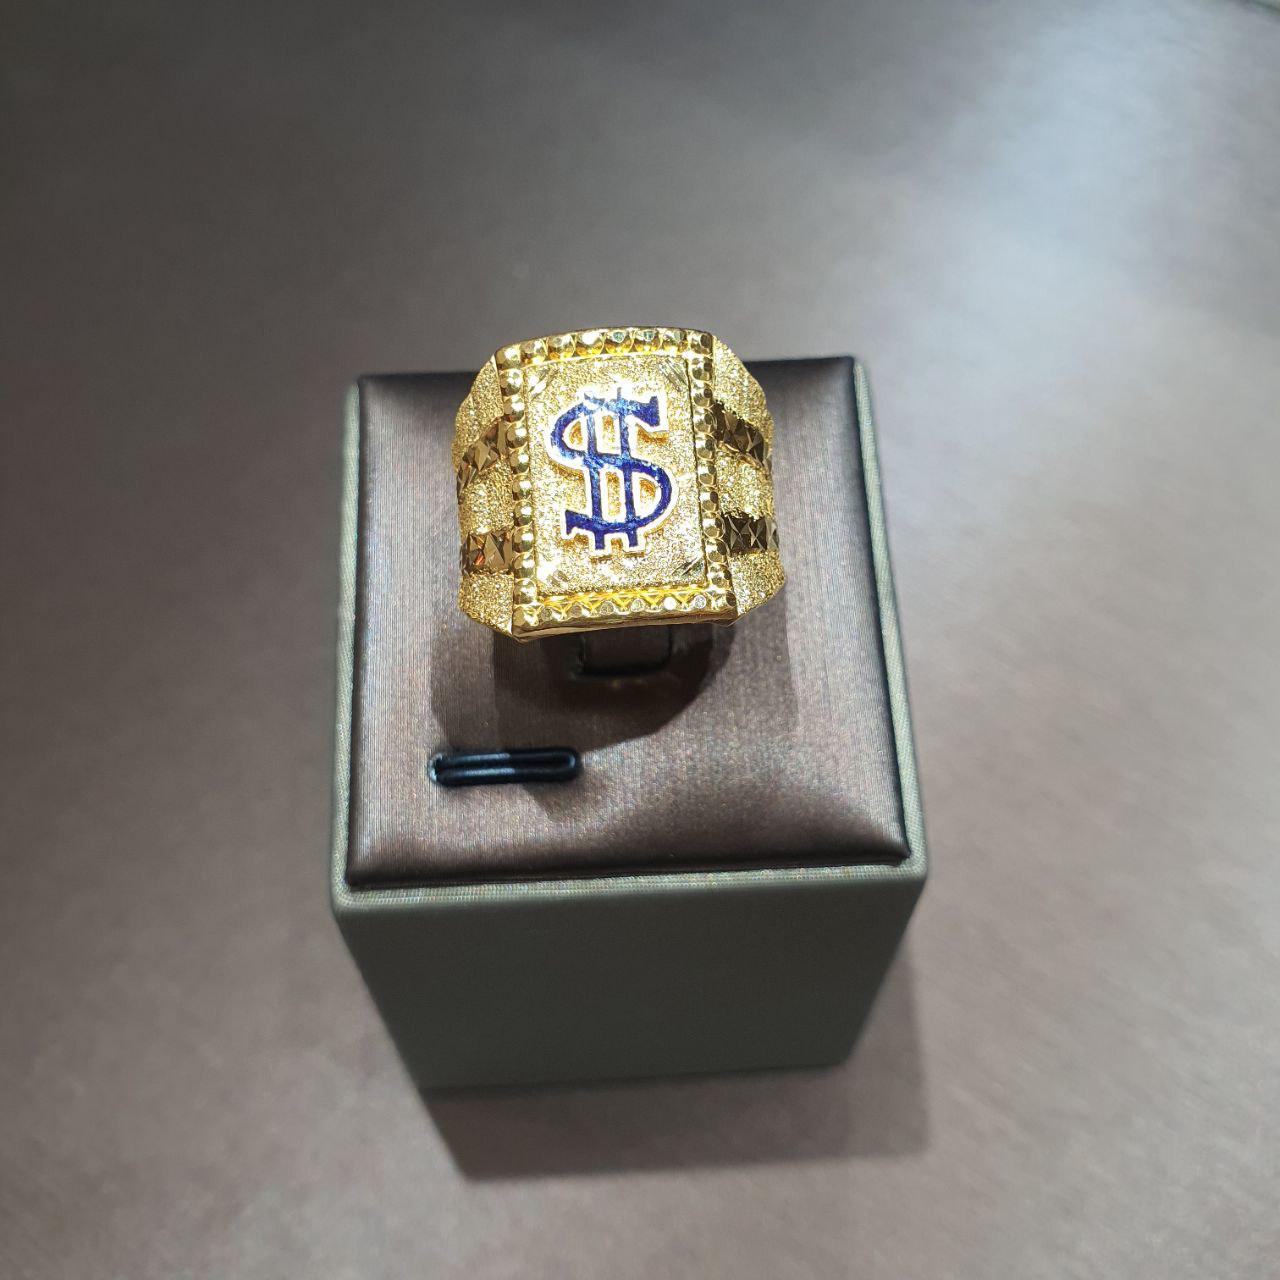 22k / 916 Gold Dollar Sign Ring v2-Rings-Best Gold Shop